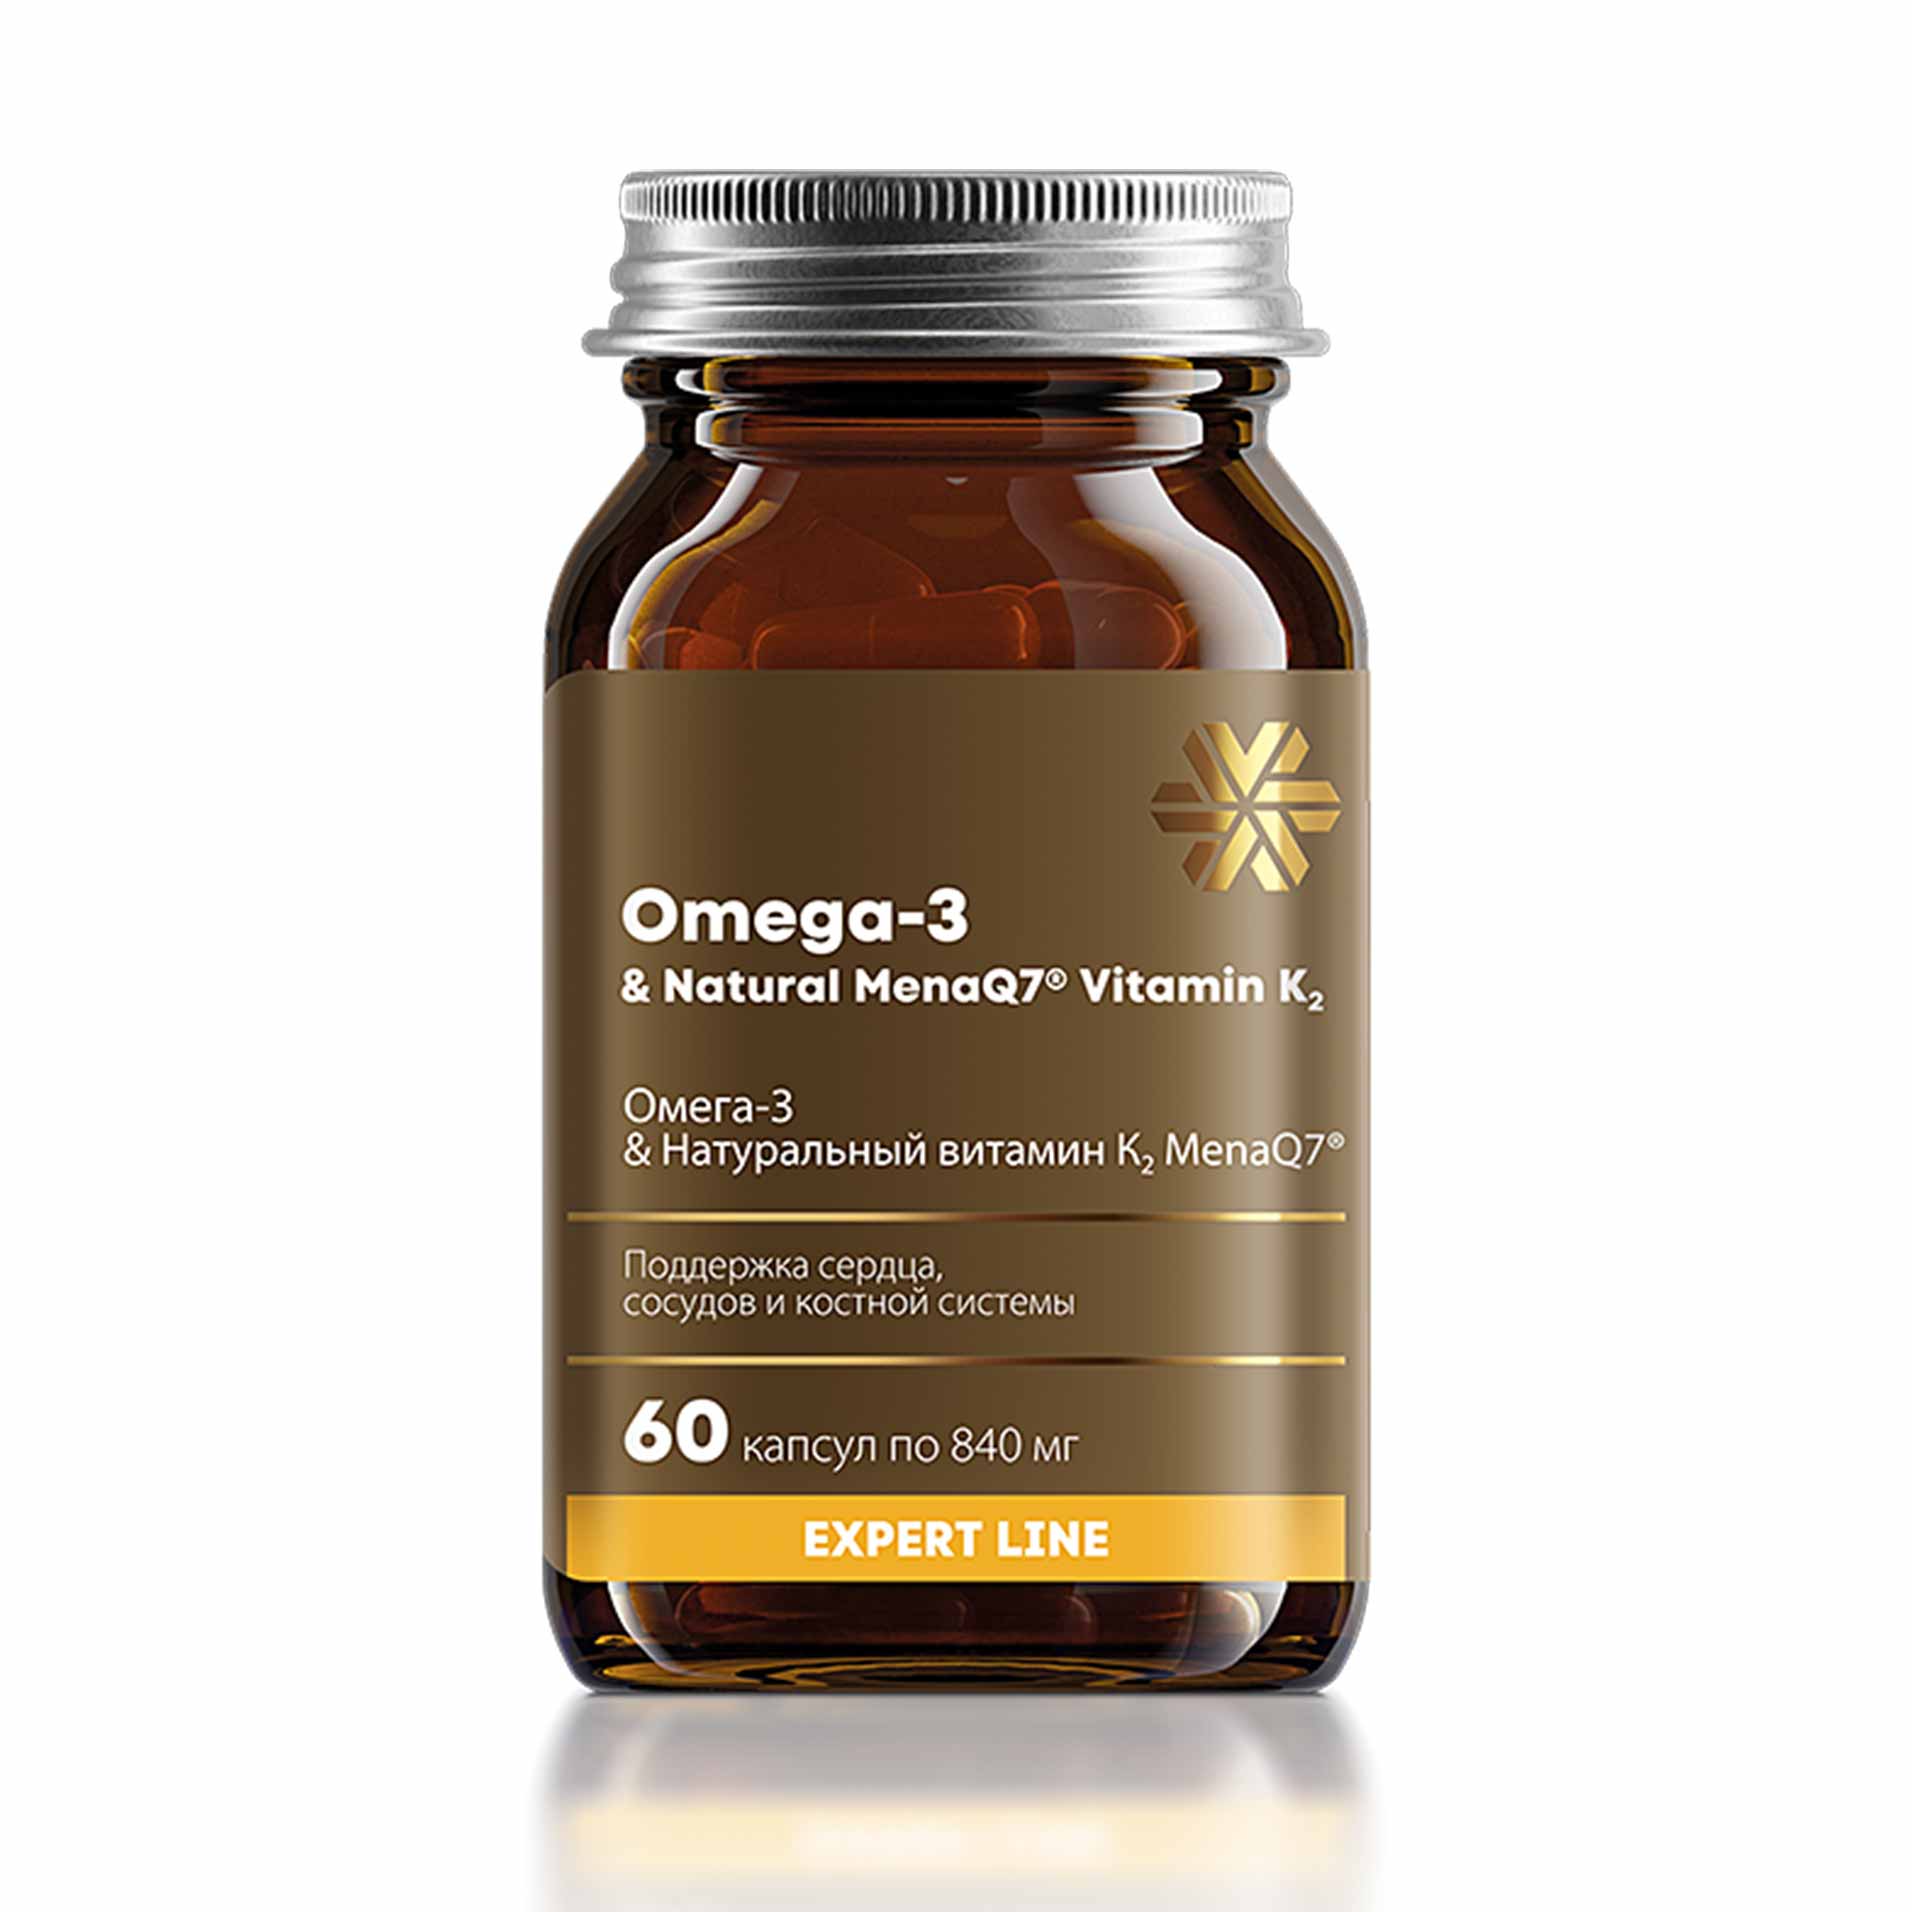 Изображение отсутствует.
			Купить Омега-3 & Натуральный витамин К2 MenaQ7® - Expert Line //  // 